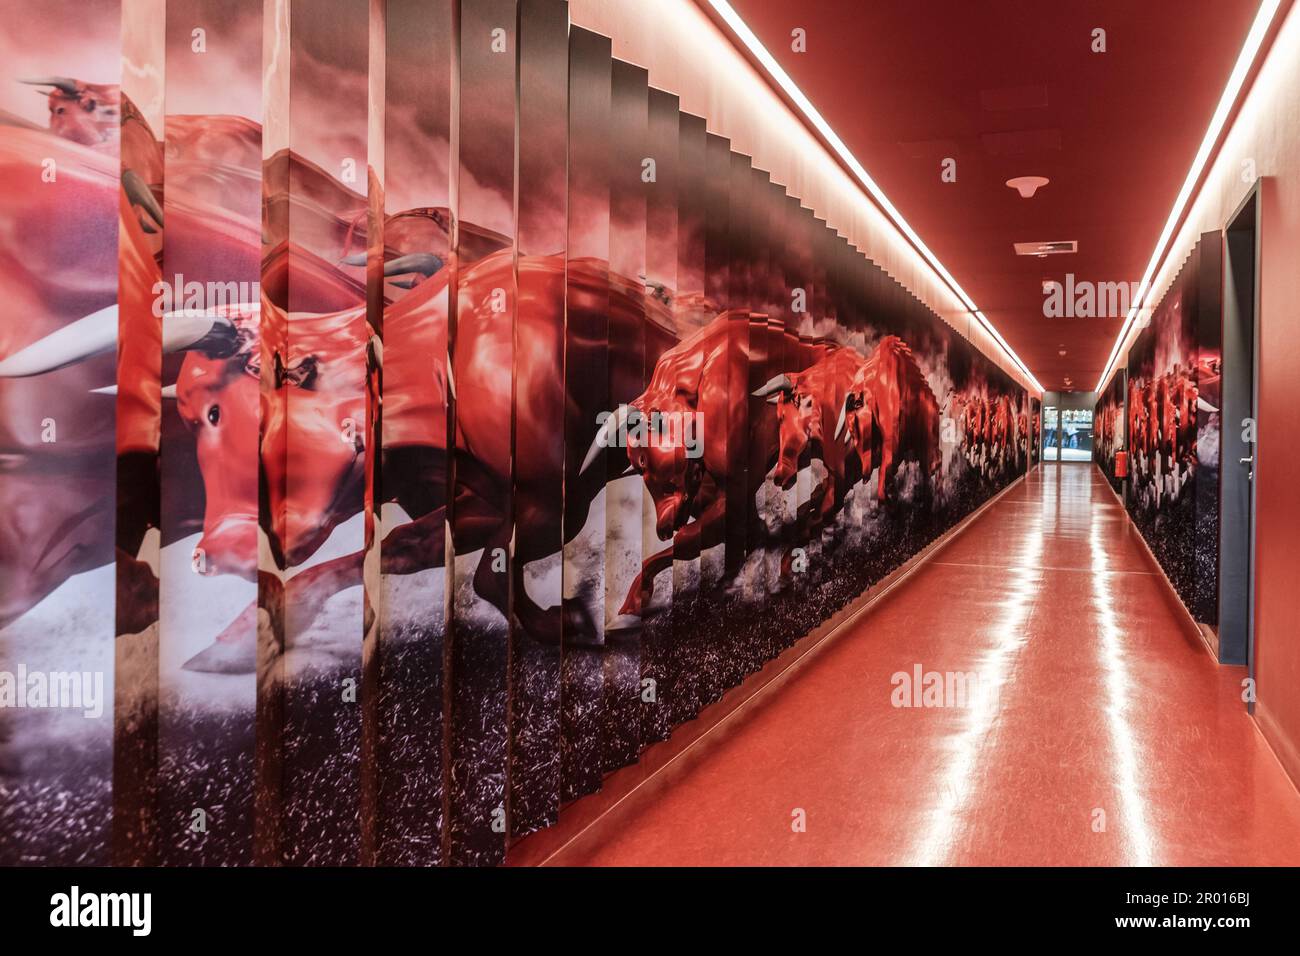 LEIPZIG, DEUTSCHLAND - 9. OKTOBER 2018: Arena Red Bull Leipzig - Korridor vom Besucherumkleideraum zum Spielfeld. Stockfoto